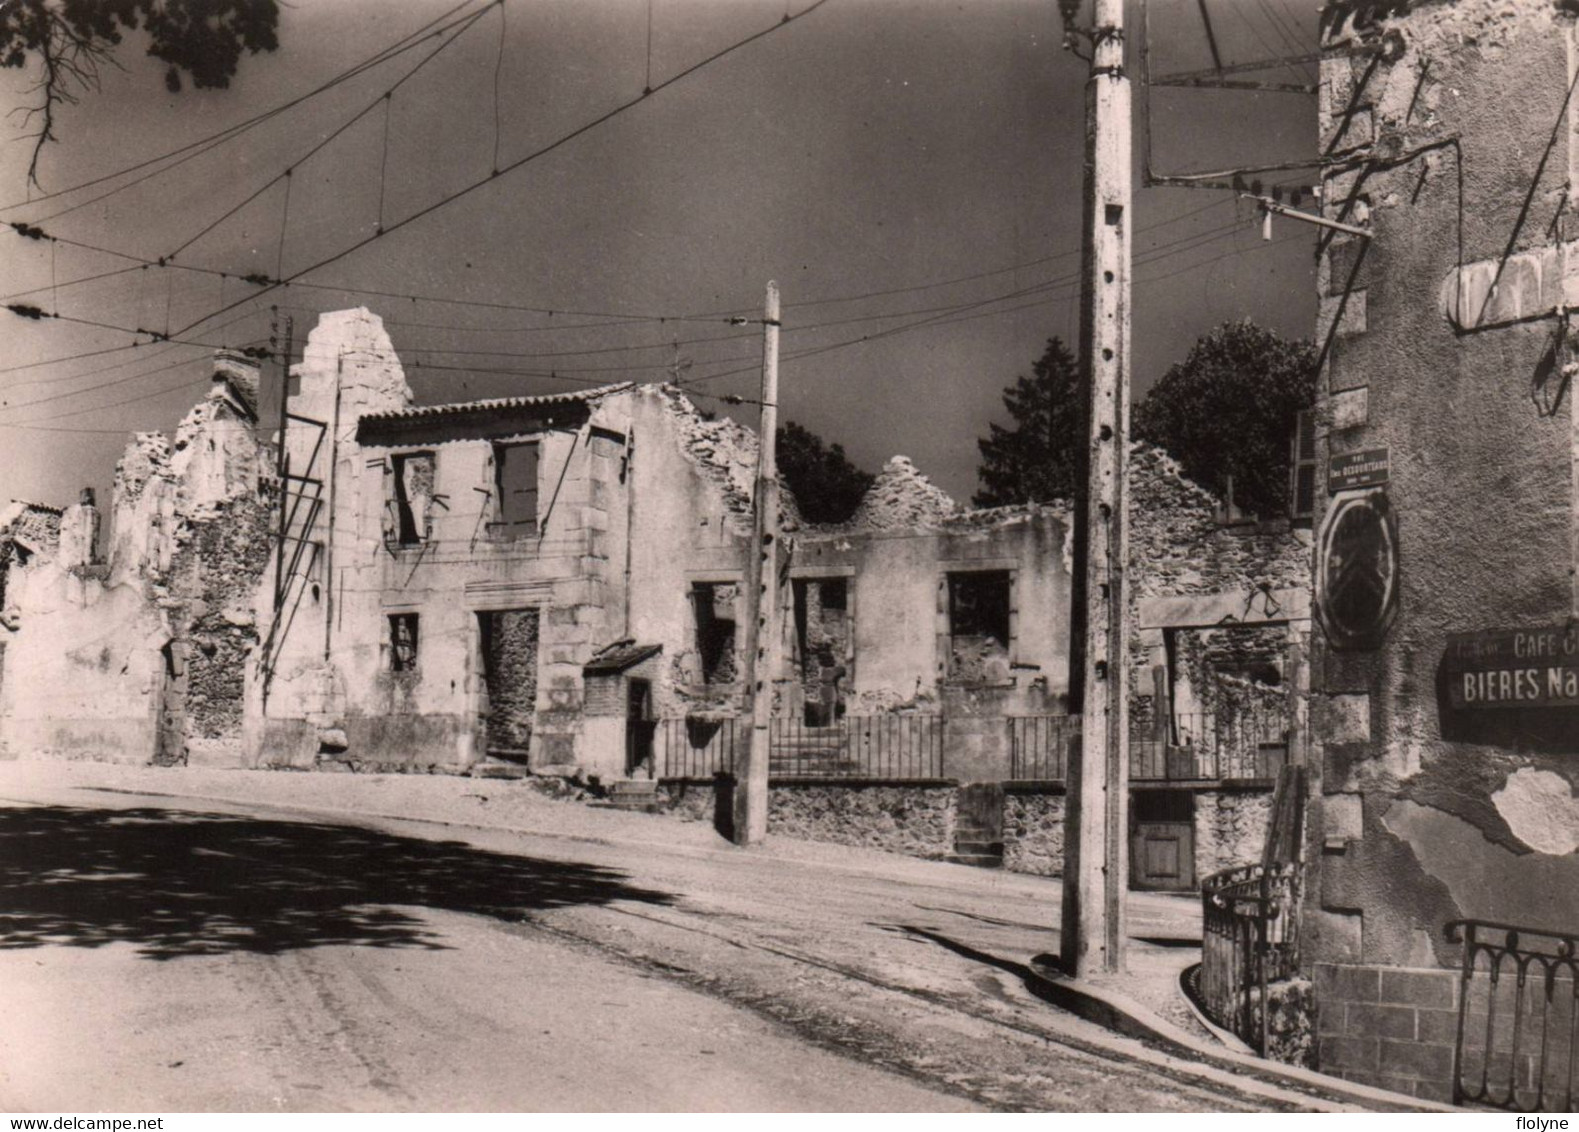 Oradour Sur Glane - La Rue E. Desourteaux - Village Détruit Le 10 Juin 1944 - Ww2 - Oradour Sur Glane